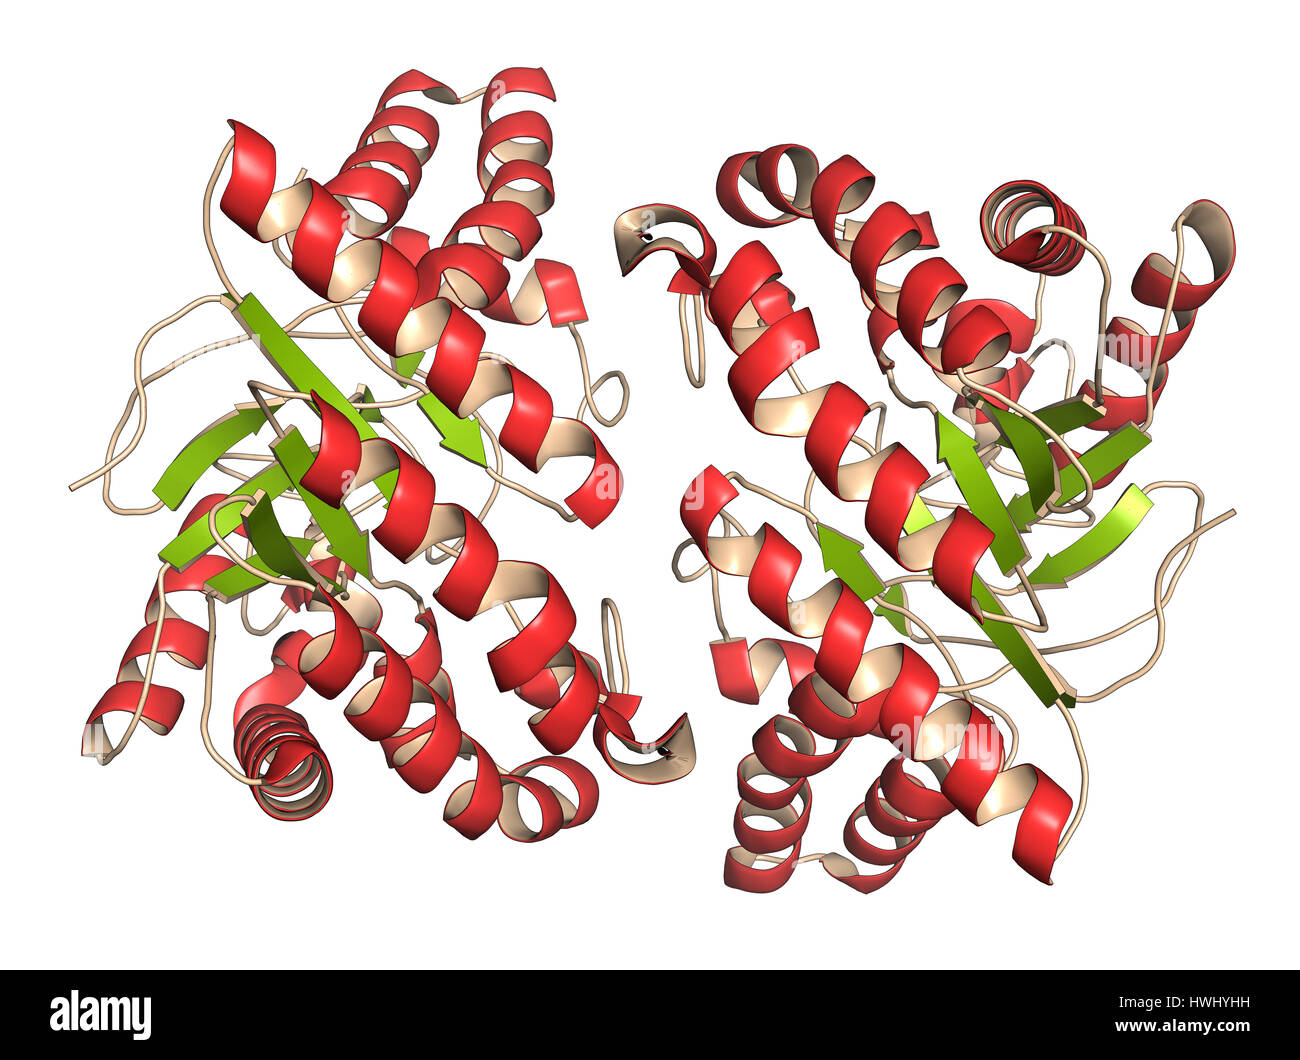 La cellulasi (endoglucanasi cel6B da Humicola insolens) cellulosa enzima di breakdown. Gli enzimi di cellulasi sono utilizzati nei detersivi per bucato. Cartoon rappresentano Foto Stock